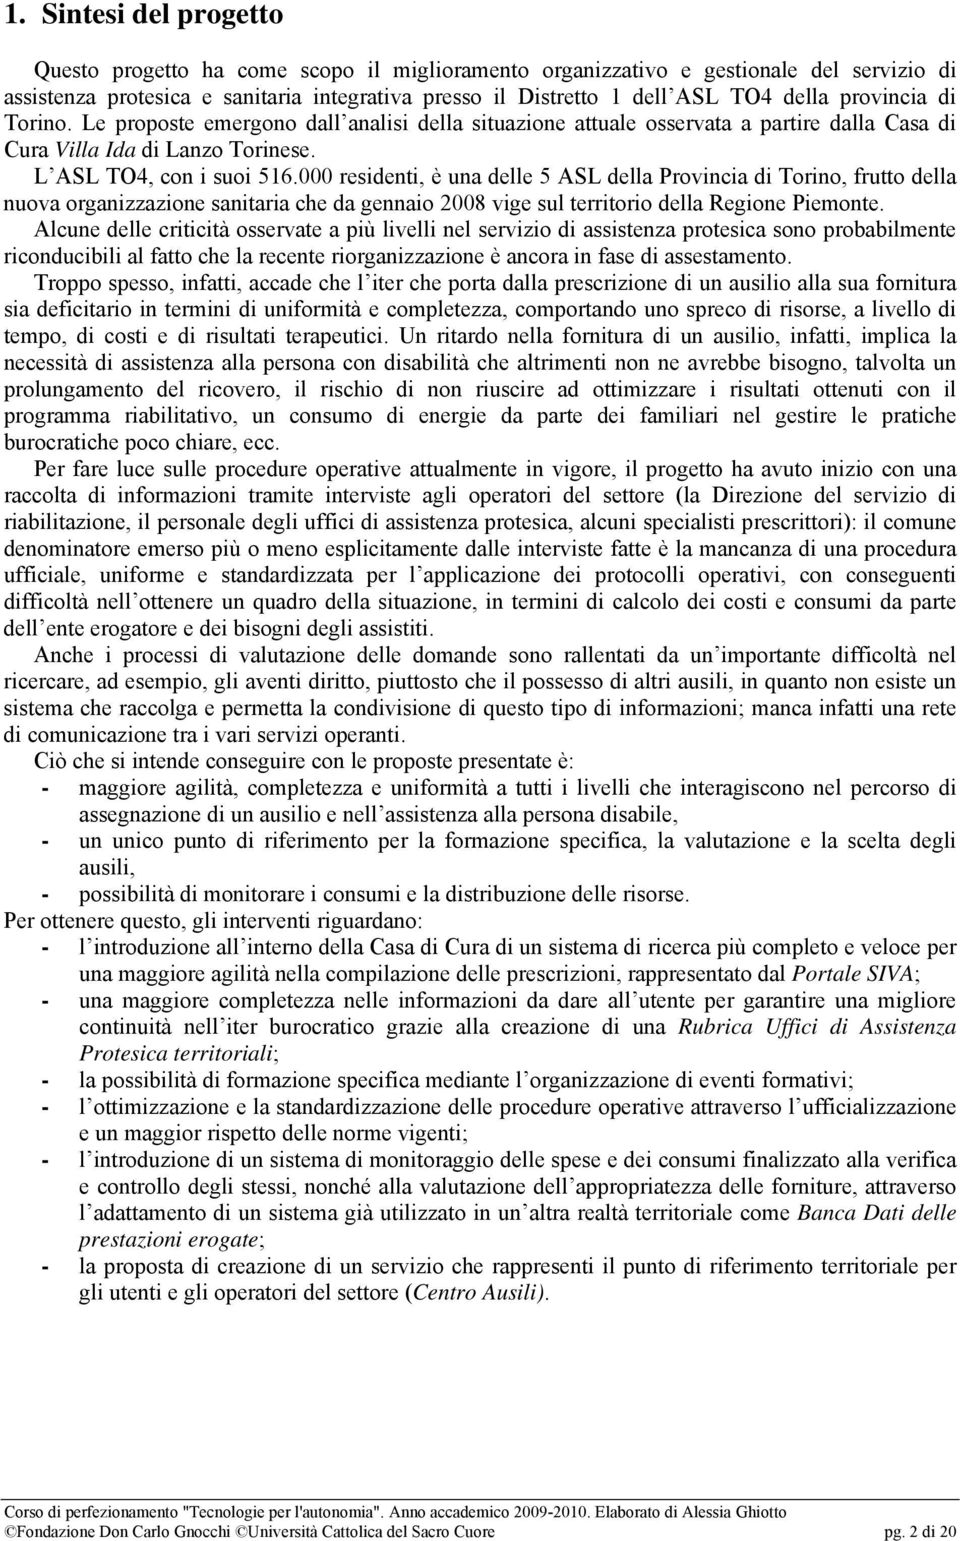 000 residenti, è una delle 5 ASL della Provincia di Torino, frutto della nuova organizzazione sanitaria che da gennaio 2008 vige sul territorio della Regione Piemonte.